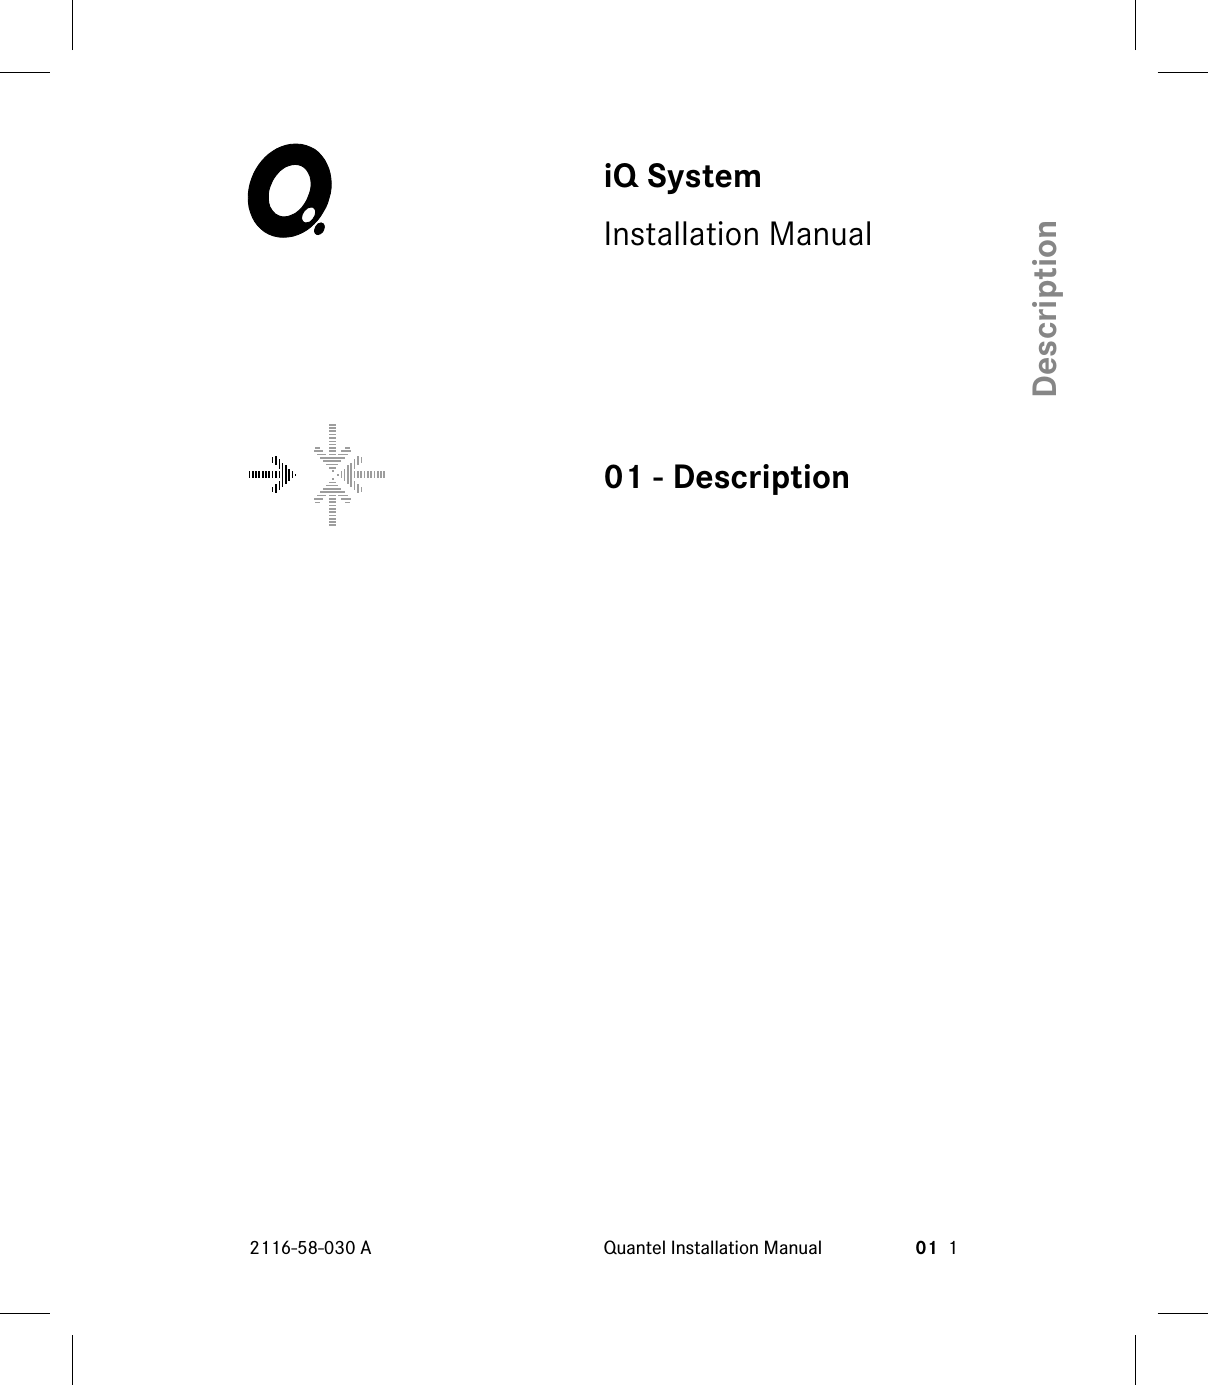 iQ SystemInstallation Manual01 - Description2116-58-030 A Quantel Installation Manual 01 1Description